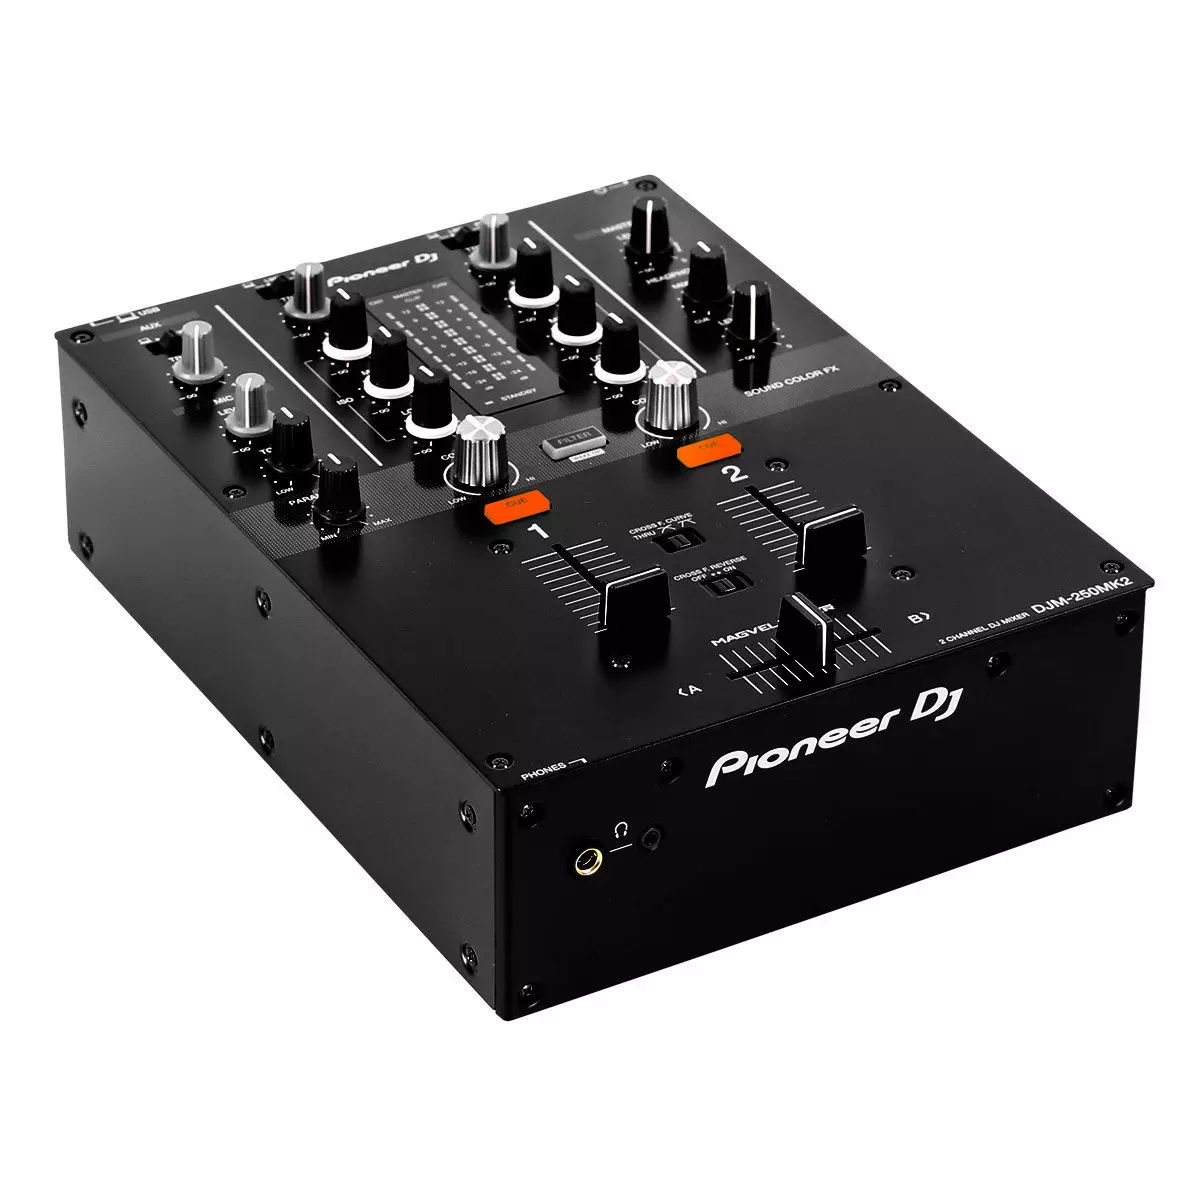 Table de mixage Pioneer DJM 250 MK2